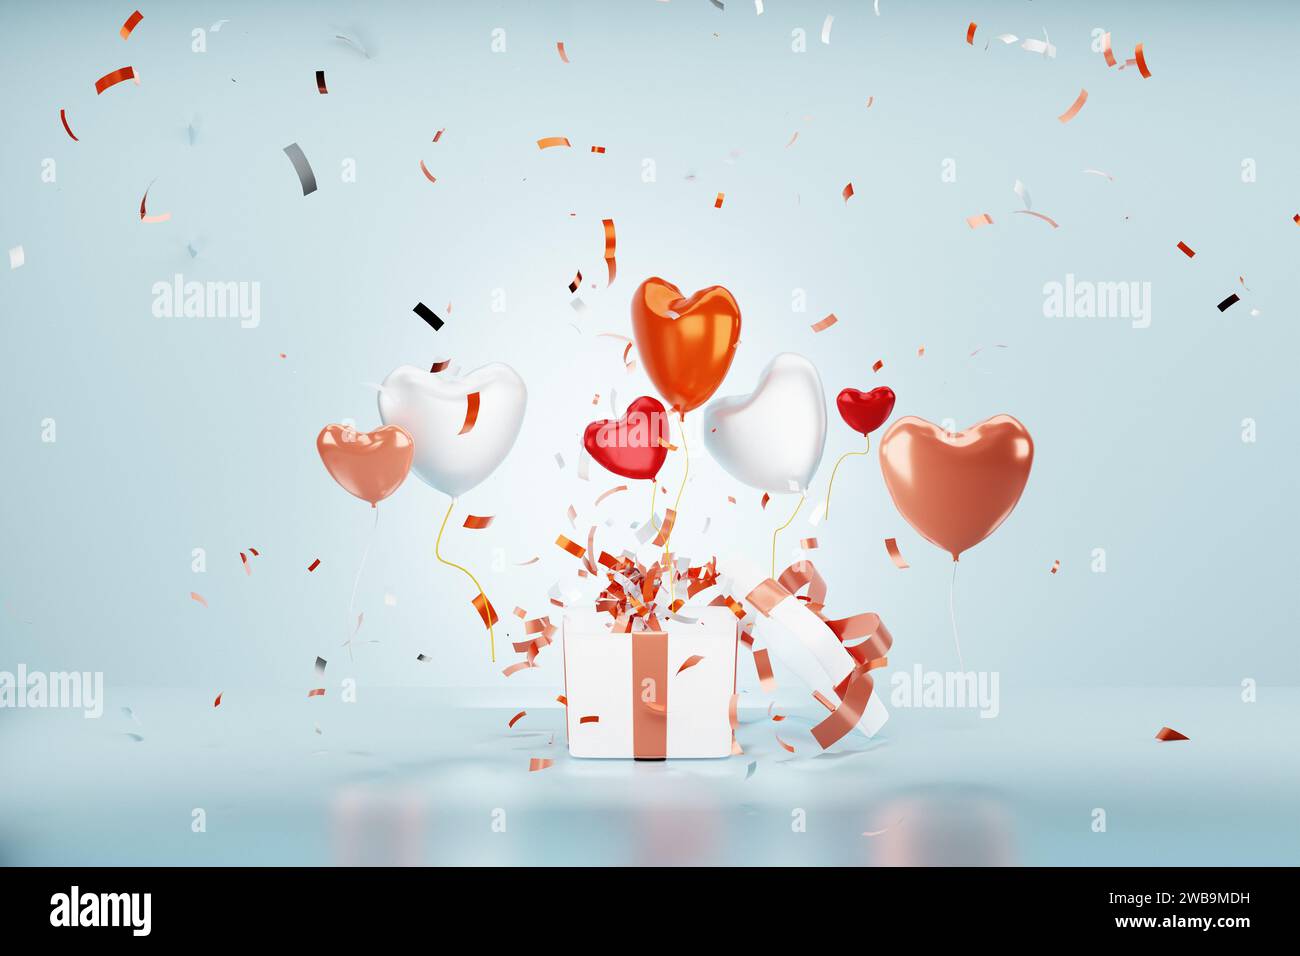 Ballons colorés en forme de coeur et confettis volant de boîte cadeau. Concept de célébration d'anniversaire. Rendu 3D. Banque D'Images